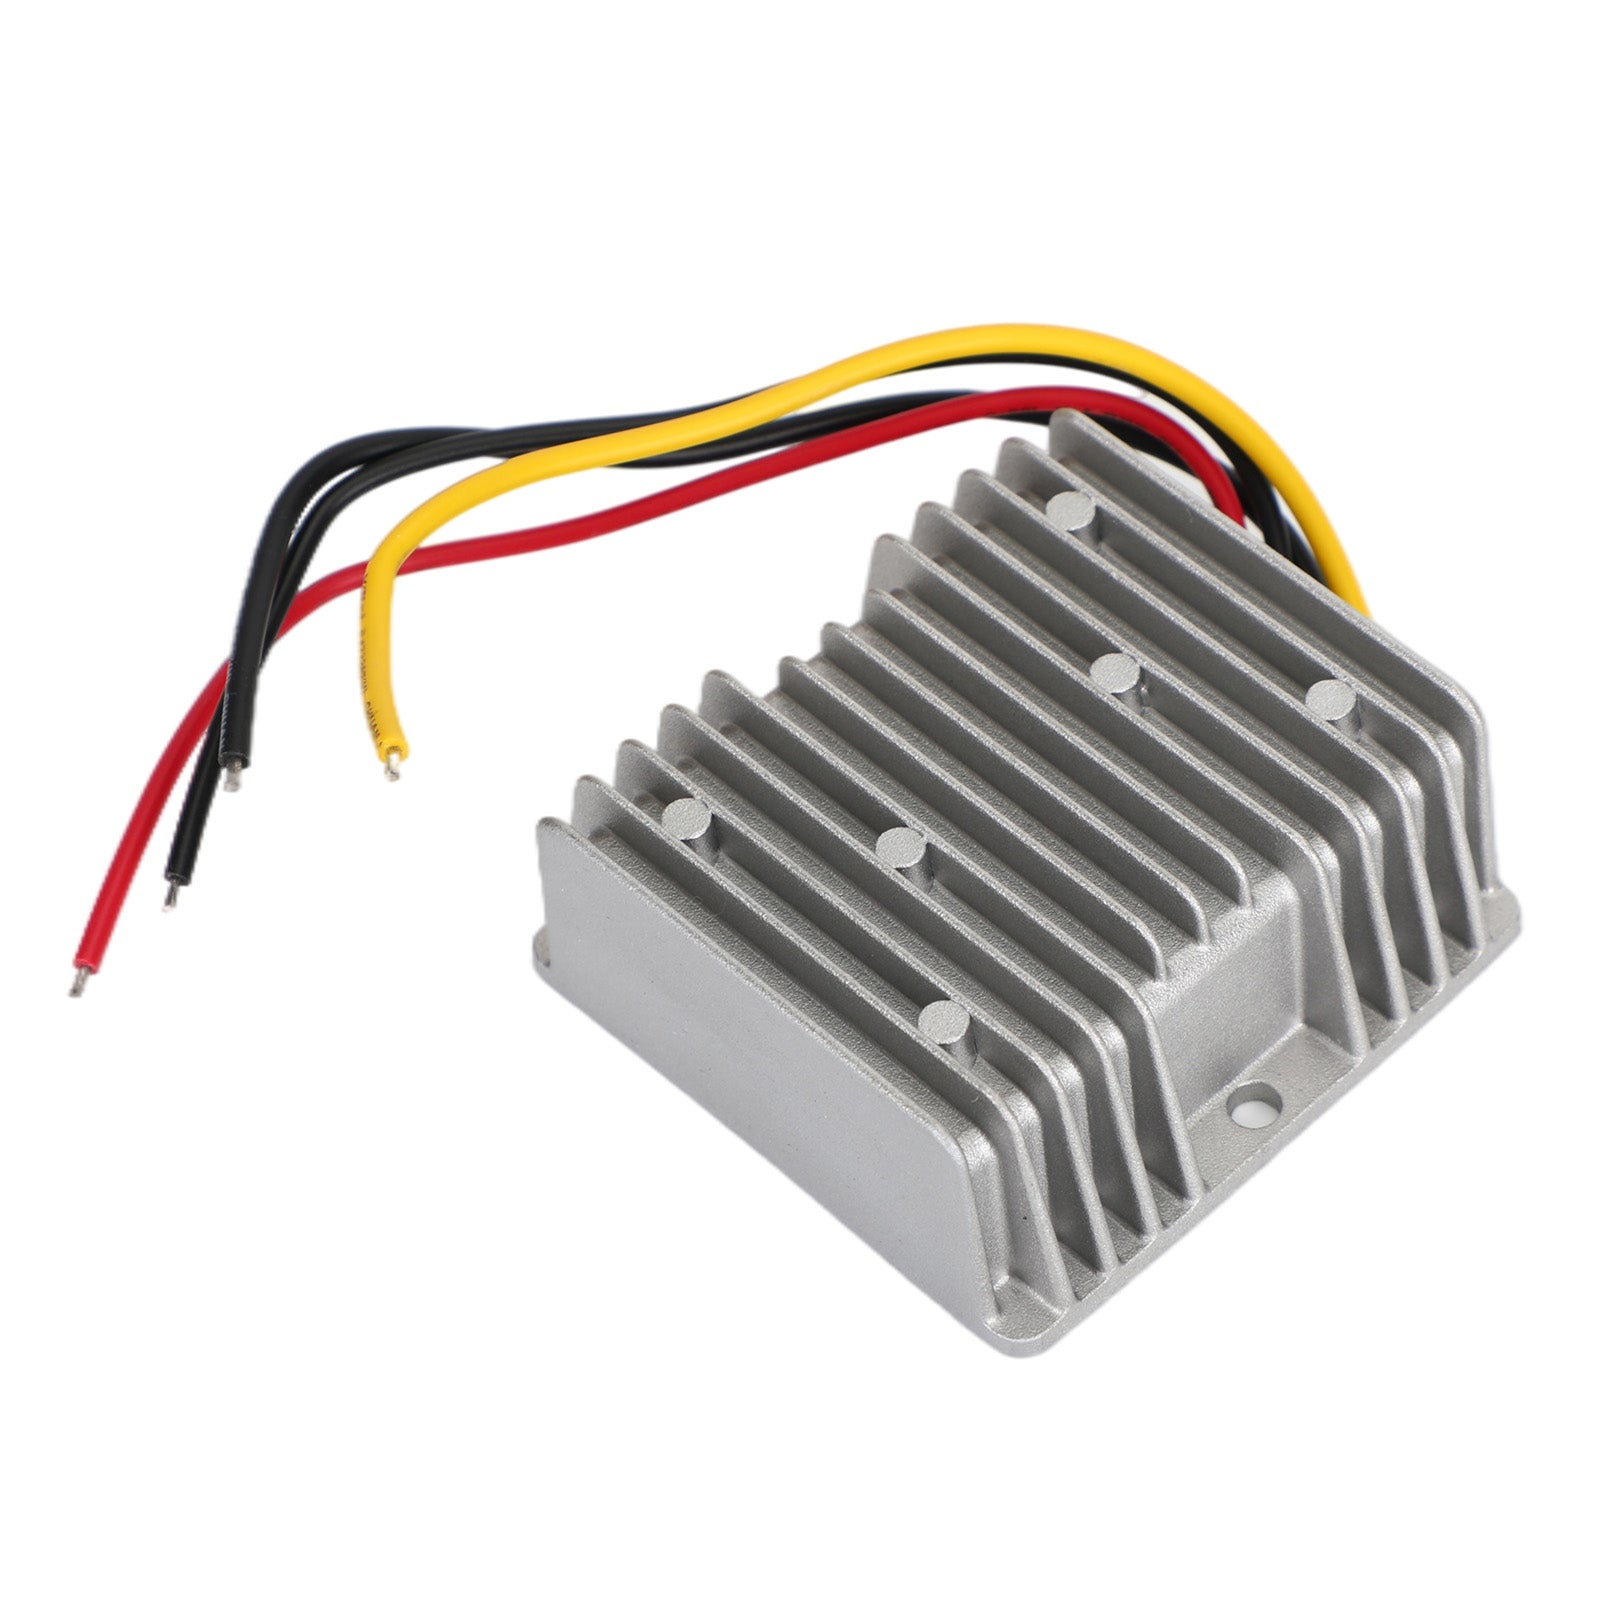 Regulador convertidor de potencia CC/CC reductor impermeable de 60 V a 24 V 5 A